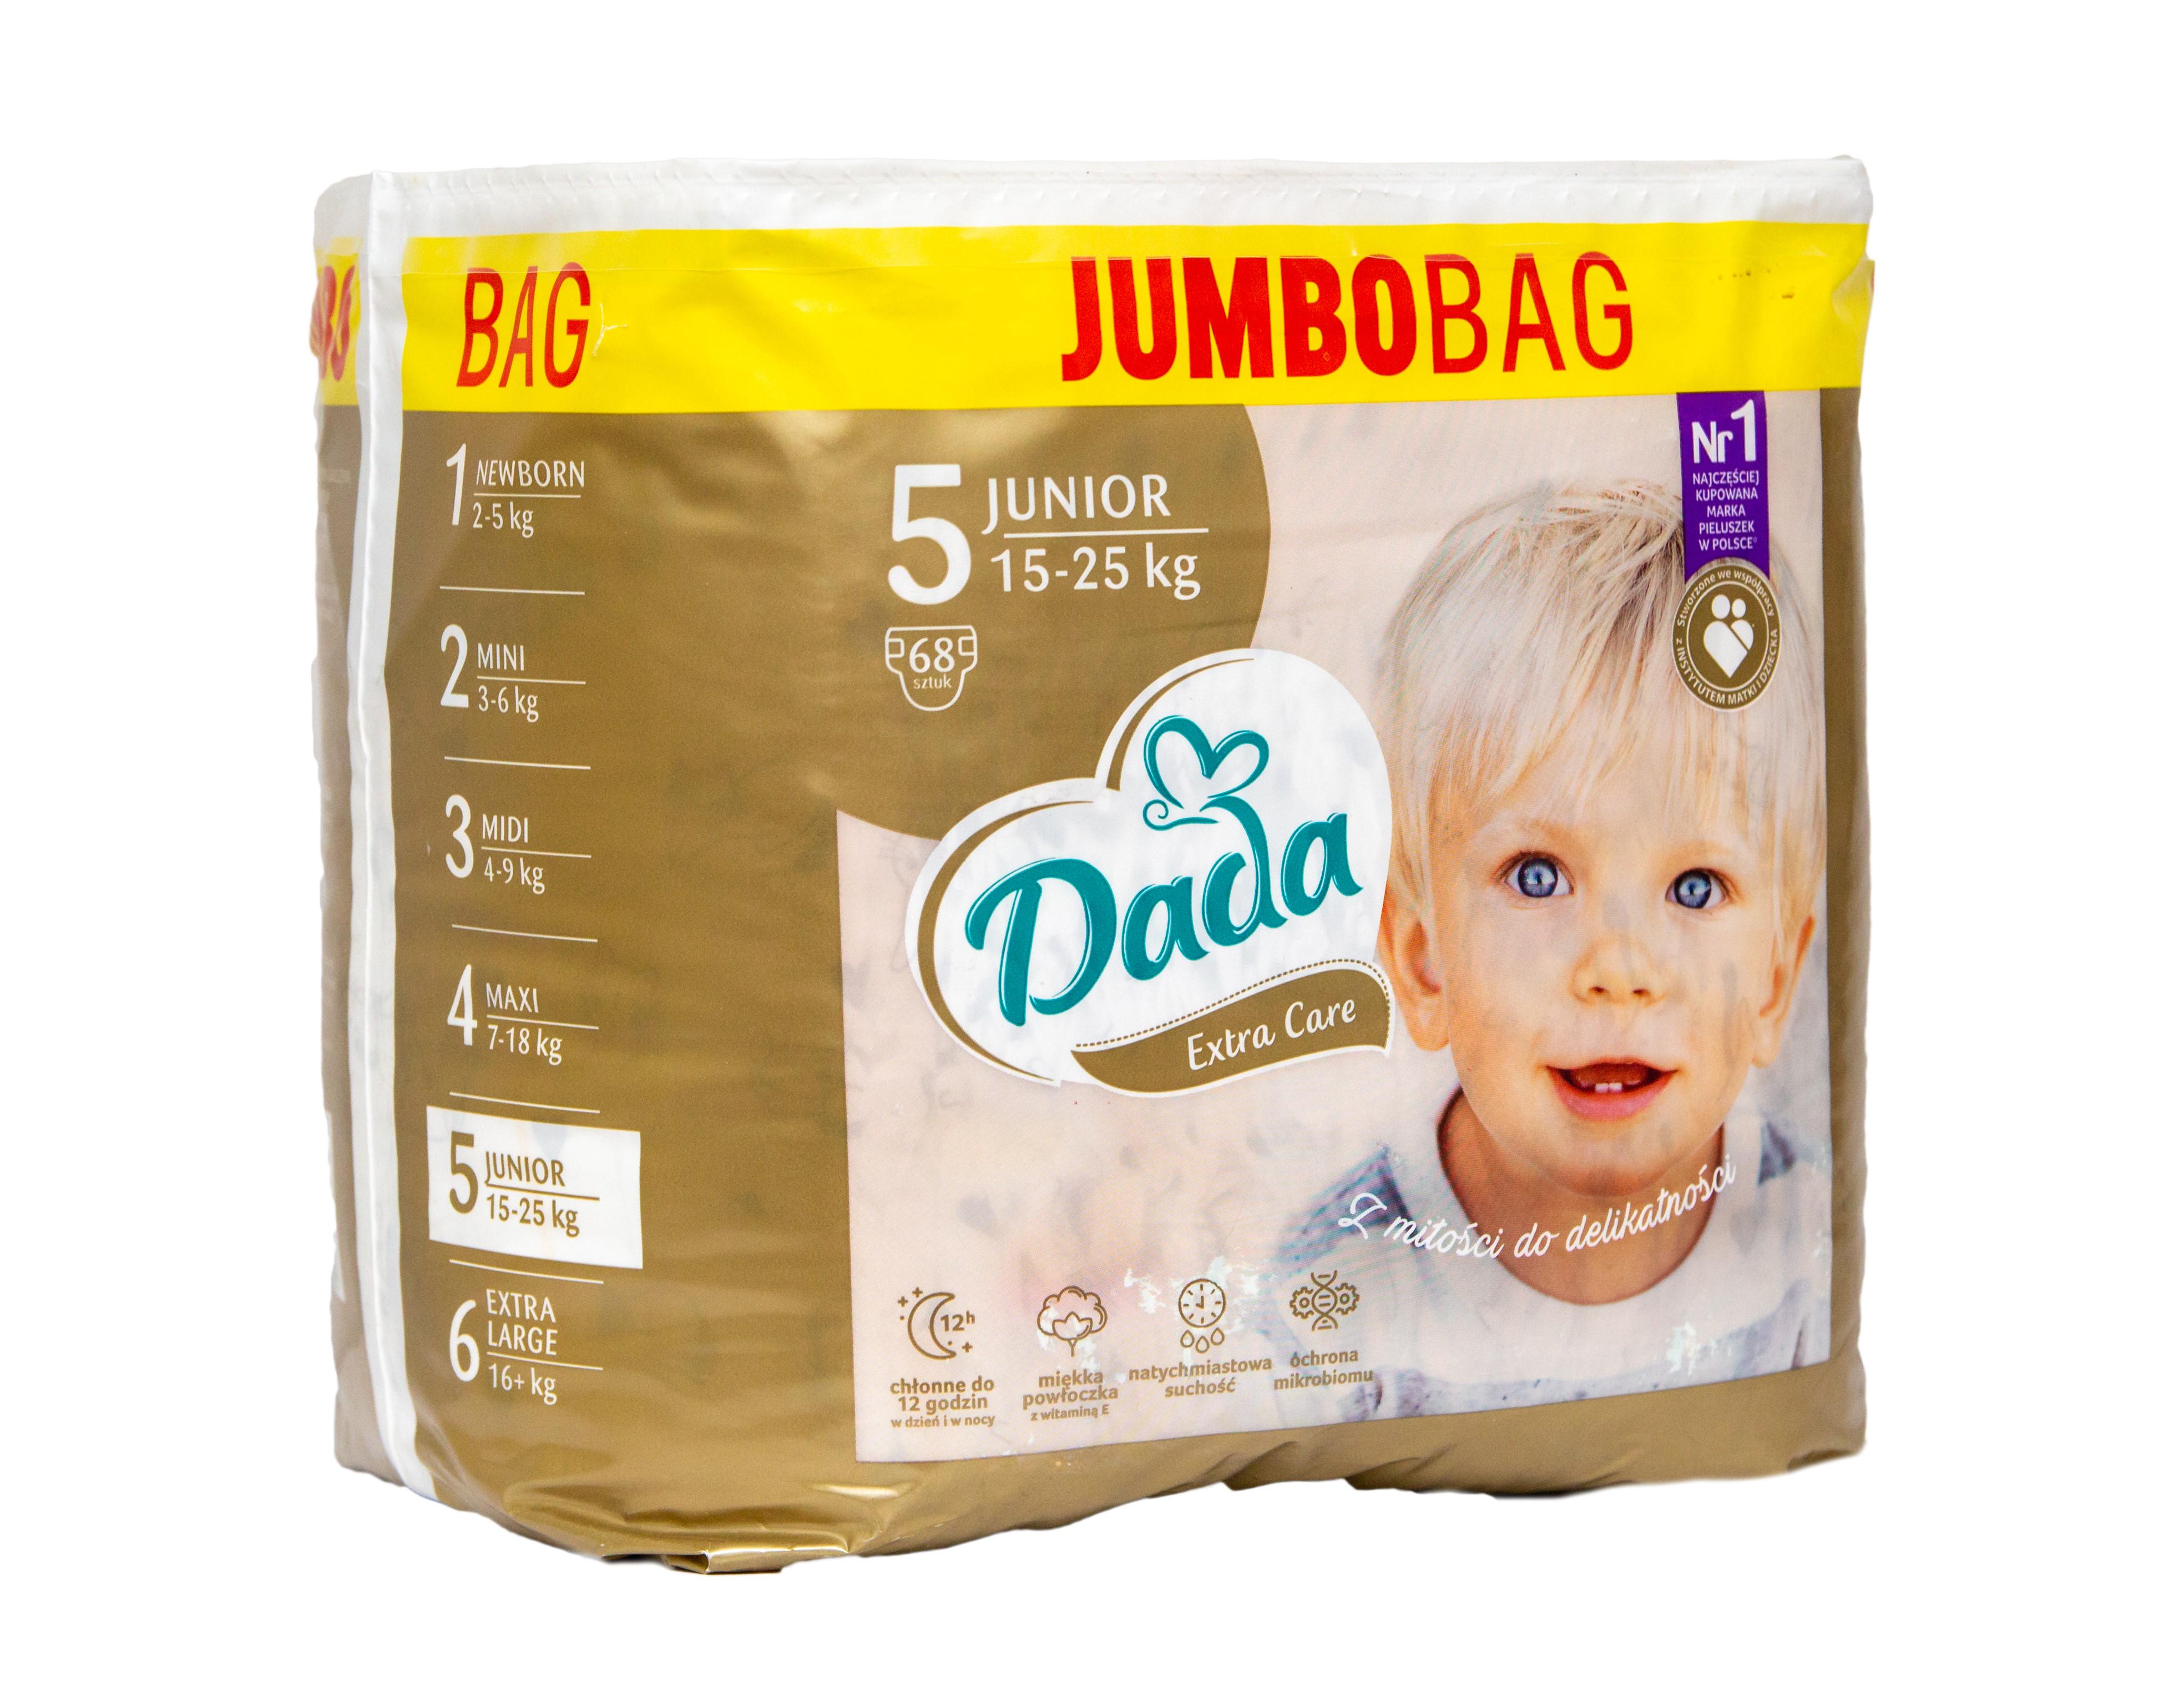 Підгузники Dada Extra Care Jumbo Bag 5 Junior 15-25 кг 68 шт. (DEC5-68)